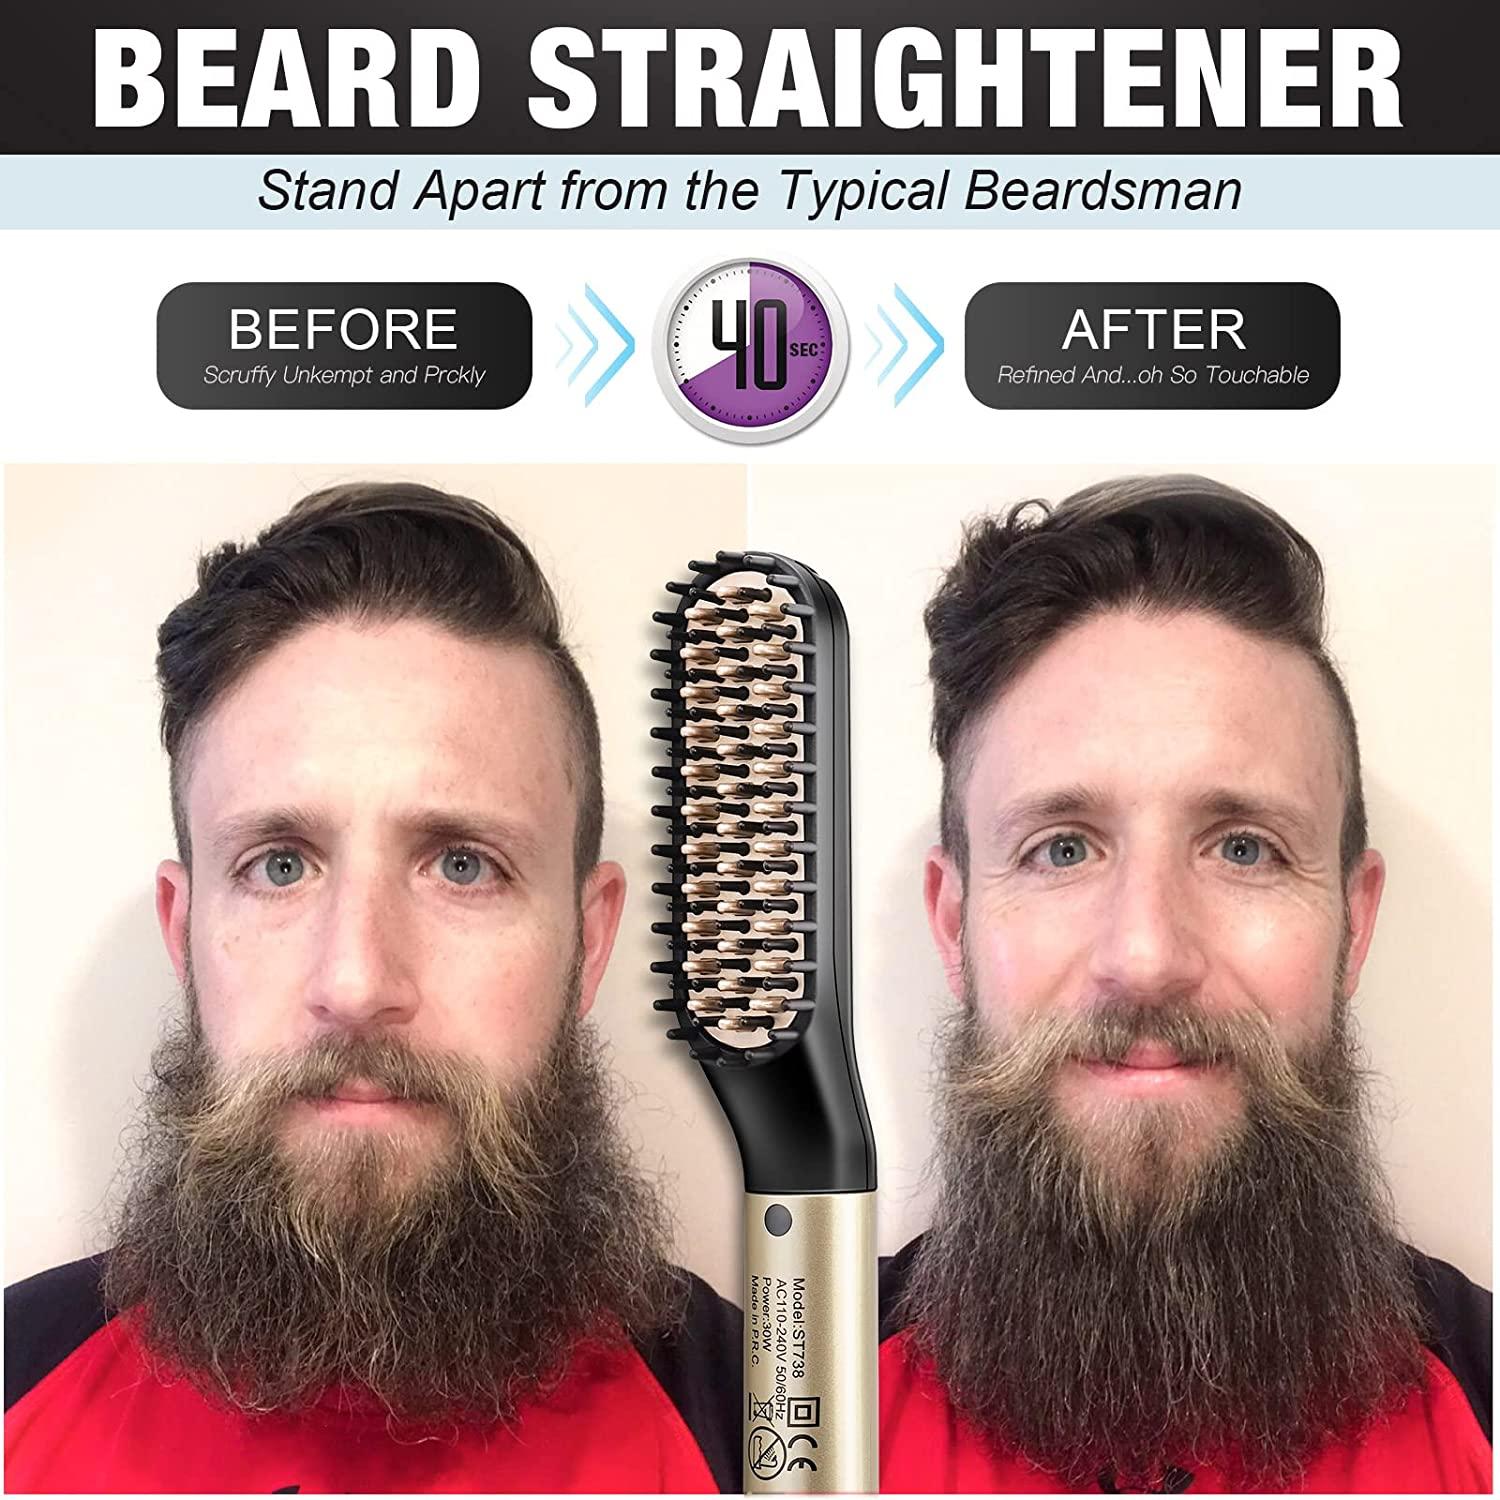 Beard Straightener Kit, Beard Growth Grooming Kit, Beard